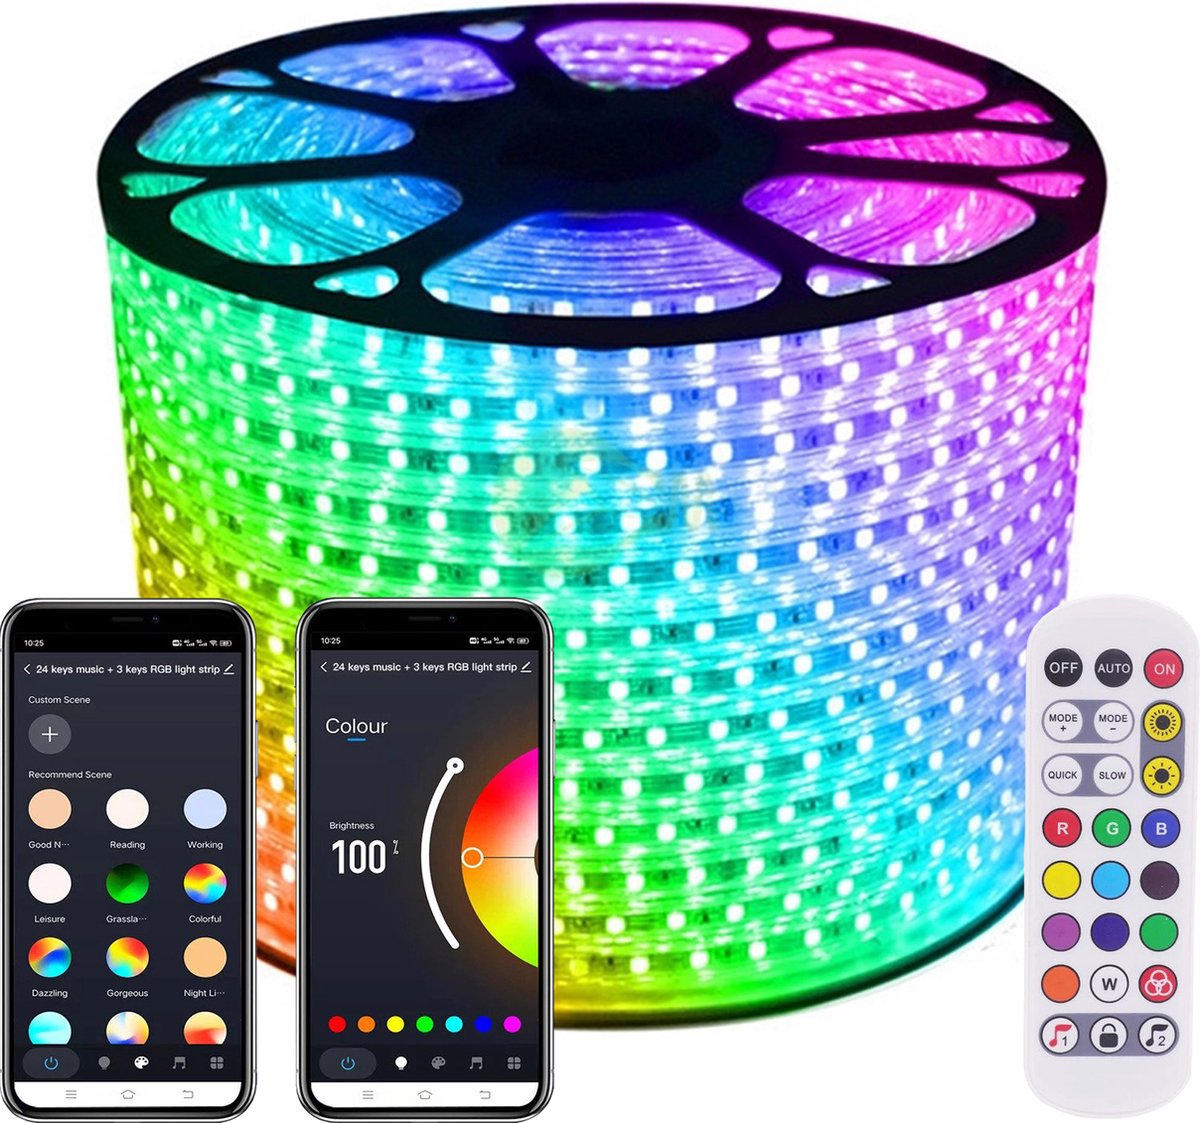 LED Strip RGB - 30 Meter aan één stuk - 16Miljoen kleuren - Met Wi-Fi App + IR 24 knops afstandsbediening - Smarthome - Google Home/Amazon Alexa - Waterdicht - Makkelijke mobiele App voor bedienen inclusief afstandsbediening - iOS en Android